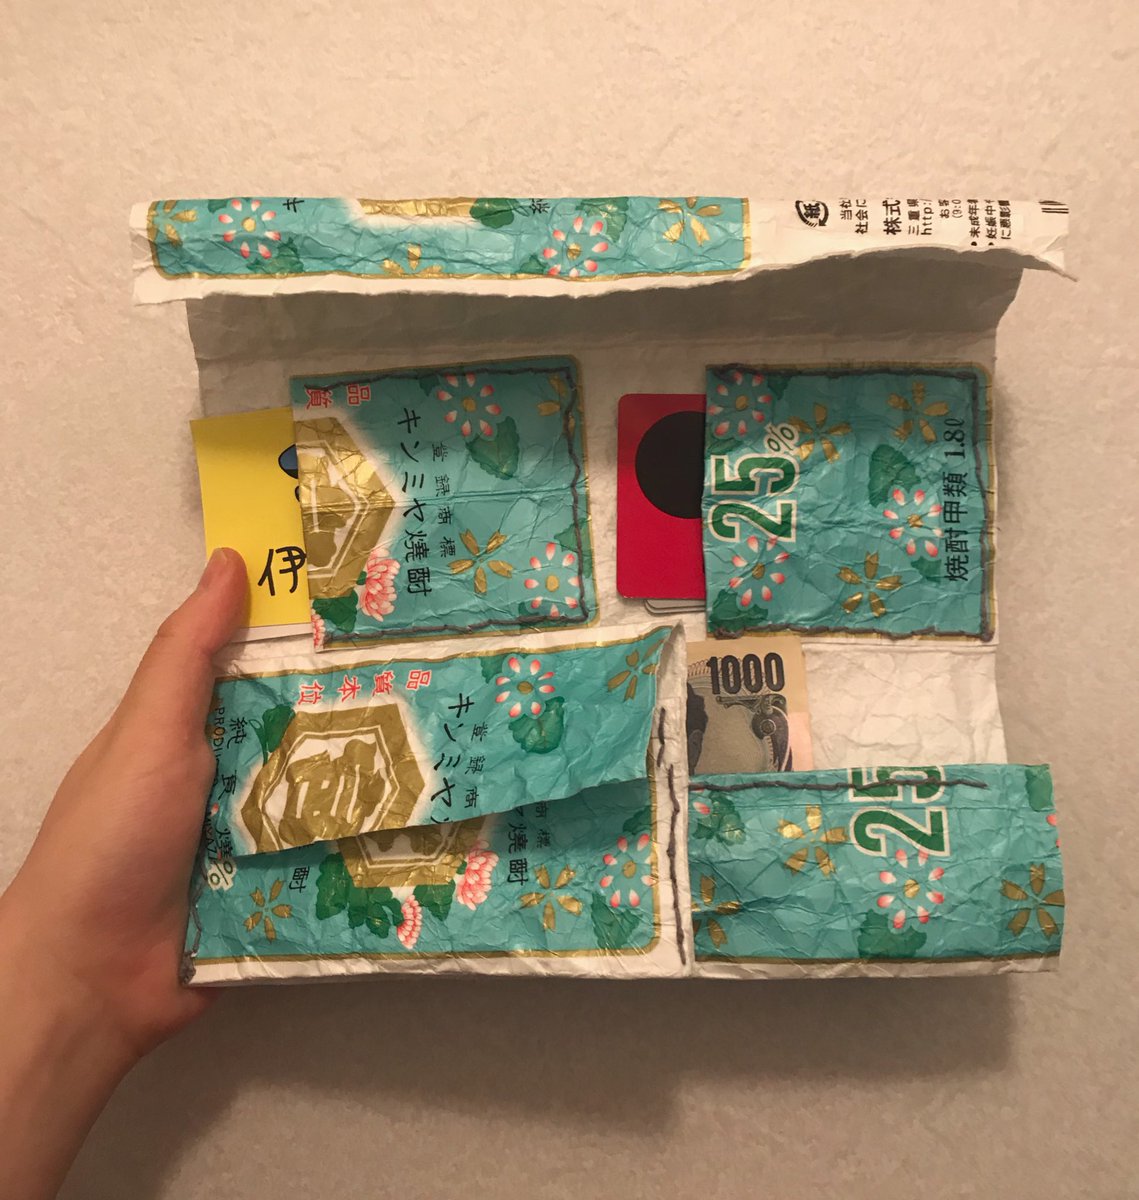 「今日は仕事したくない日だったので、お財布を作りました? 」|伊豆見のイラスト